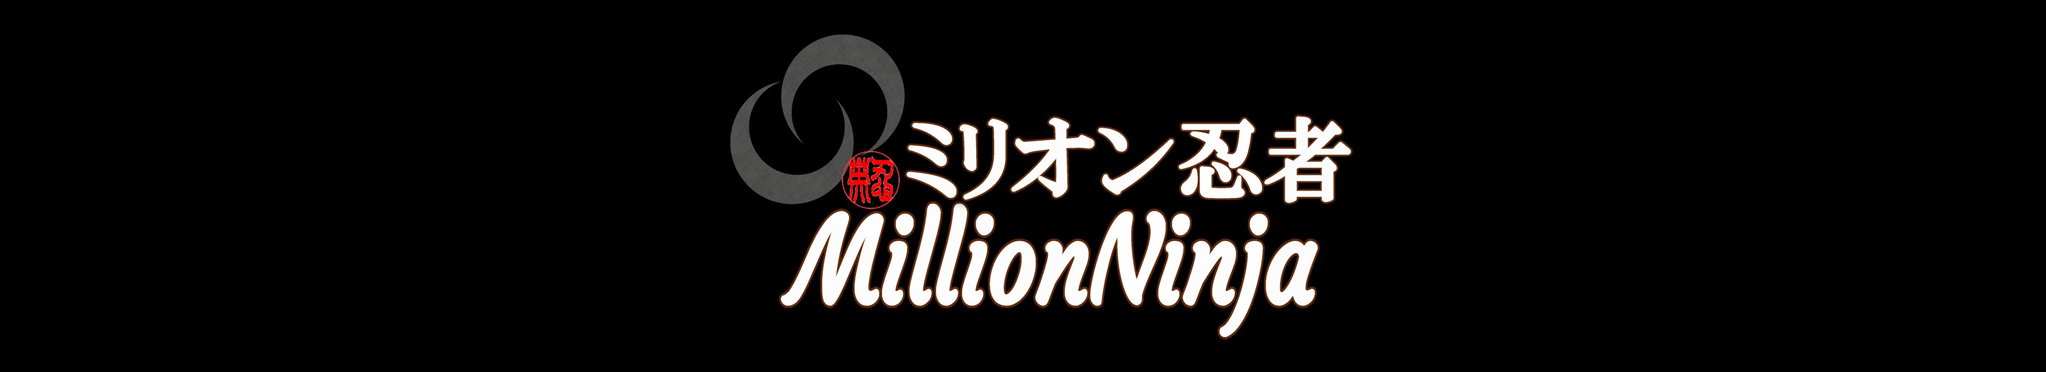 MillionNinja